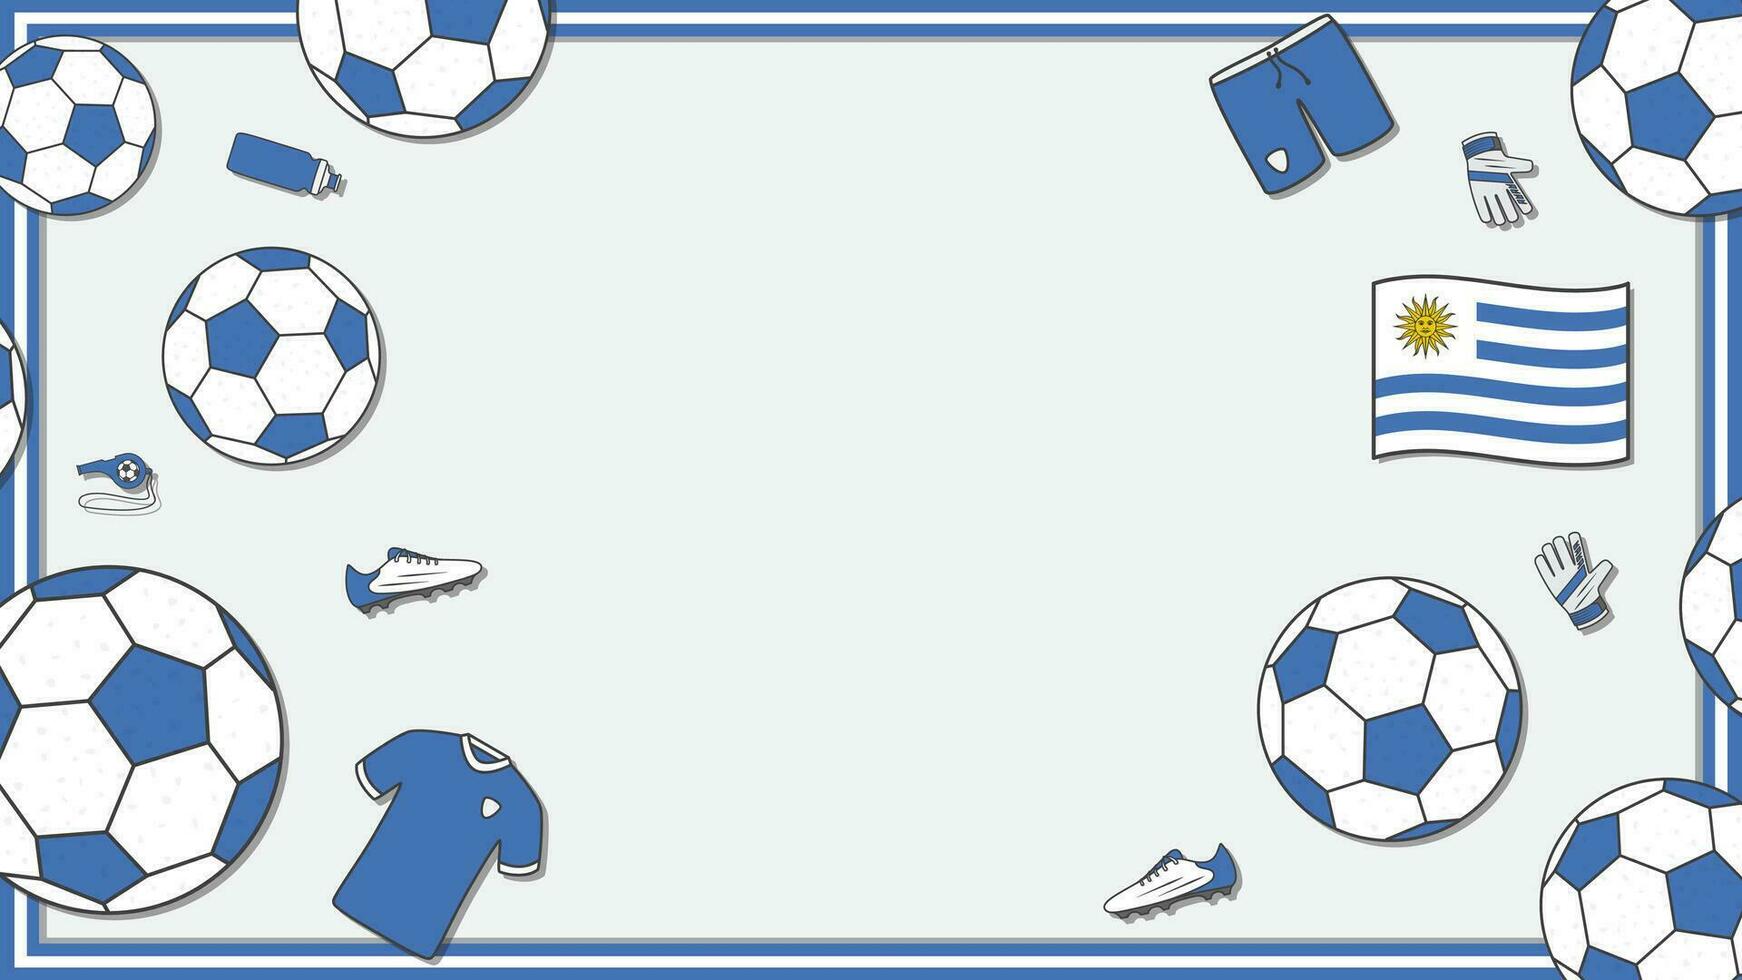 Football Background Design Template. Football Cartoon Vector Illustration. Sport In Uruguay